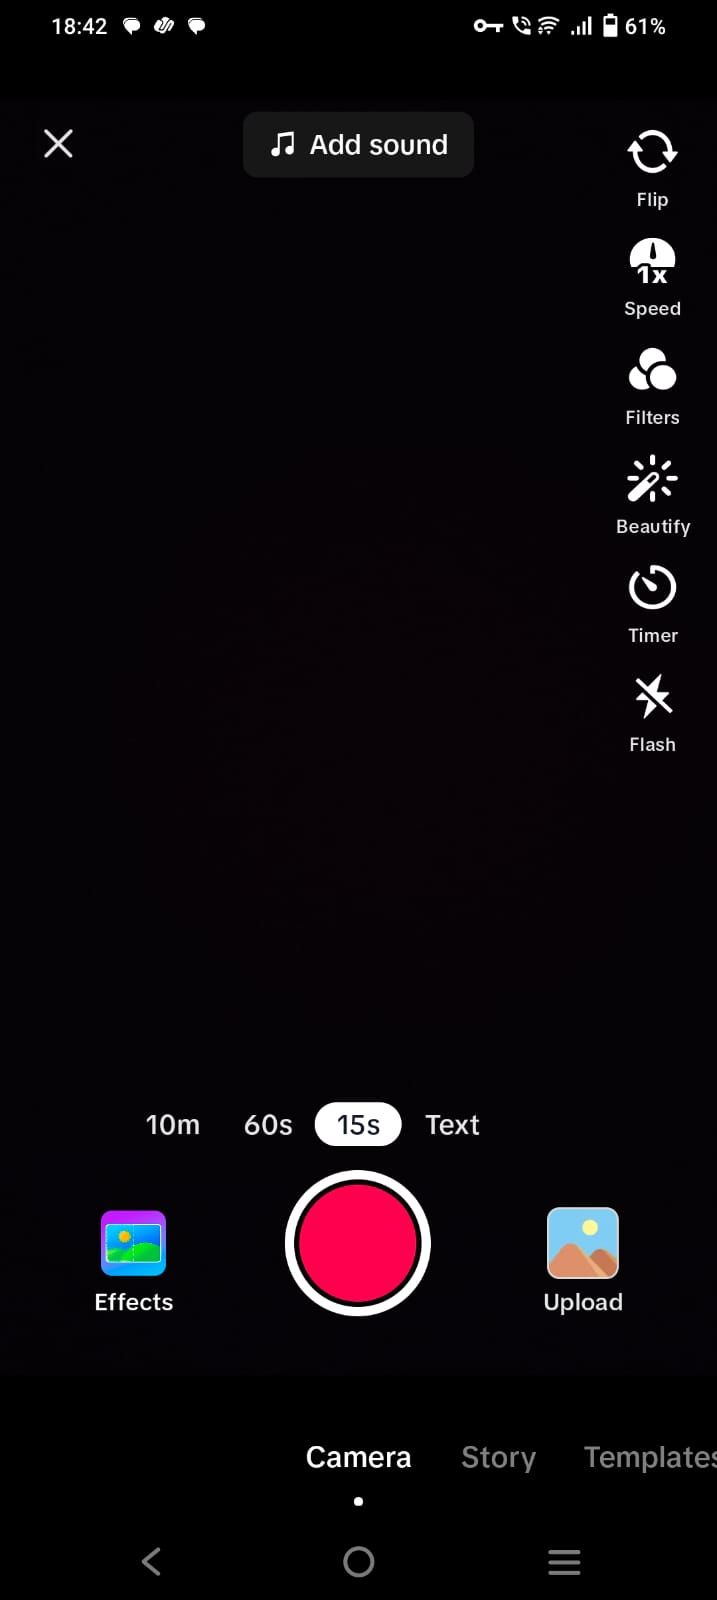 Captura de tela mostrando a câmera e as opções de upload no aplicativo TikTok